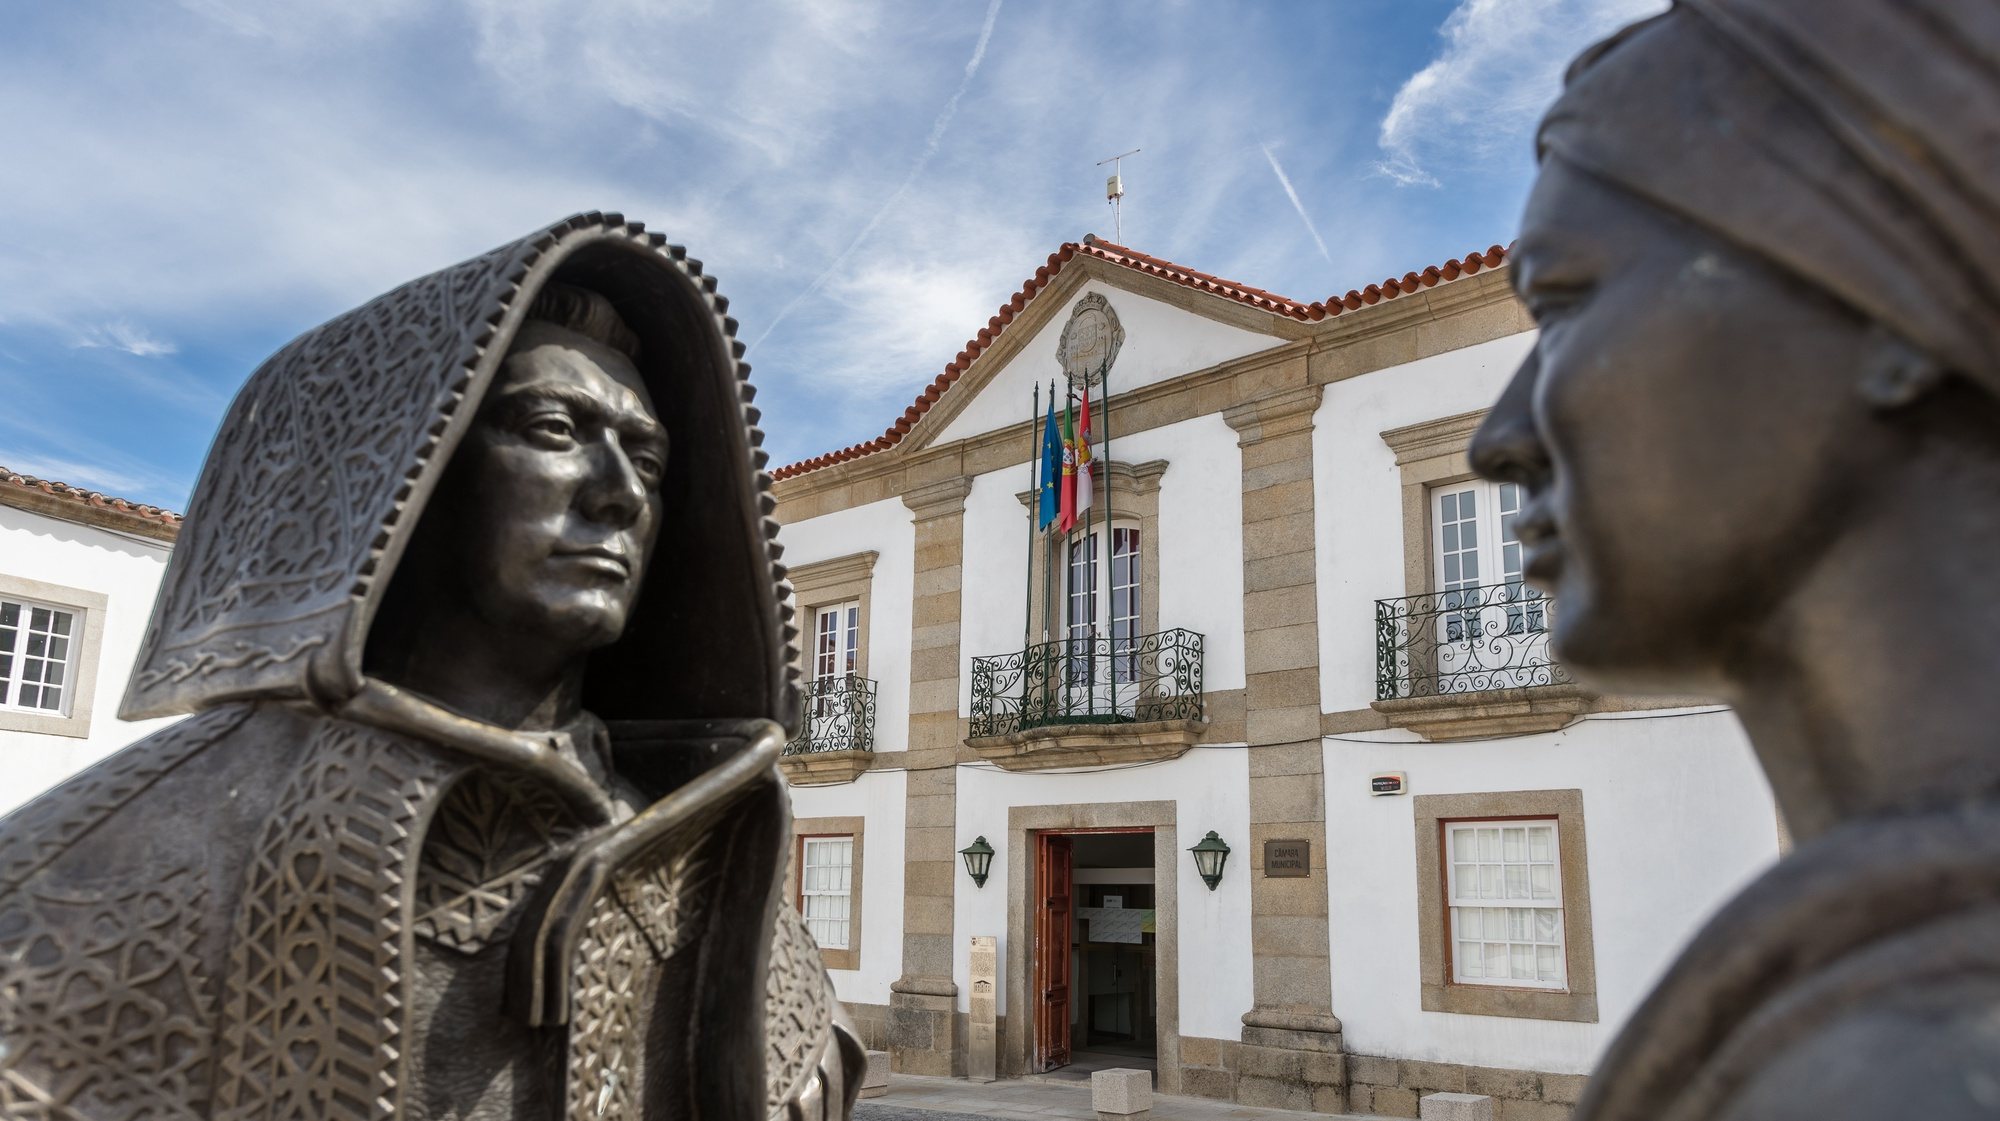 Esculturas de bronze, representando um homem com a capa de honras e uma mulher envergando as roupas tradicionais mirandesas, em frente ao edifício da Câmara Municipal de Miranda do Douro, 27 de setembro 2017. PEDRO SARMENTO COSTA/LUSA